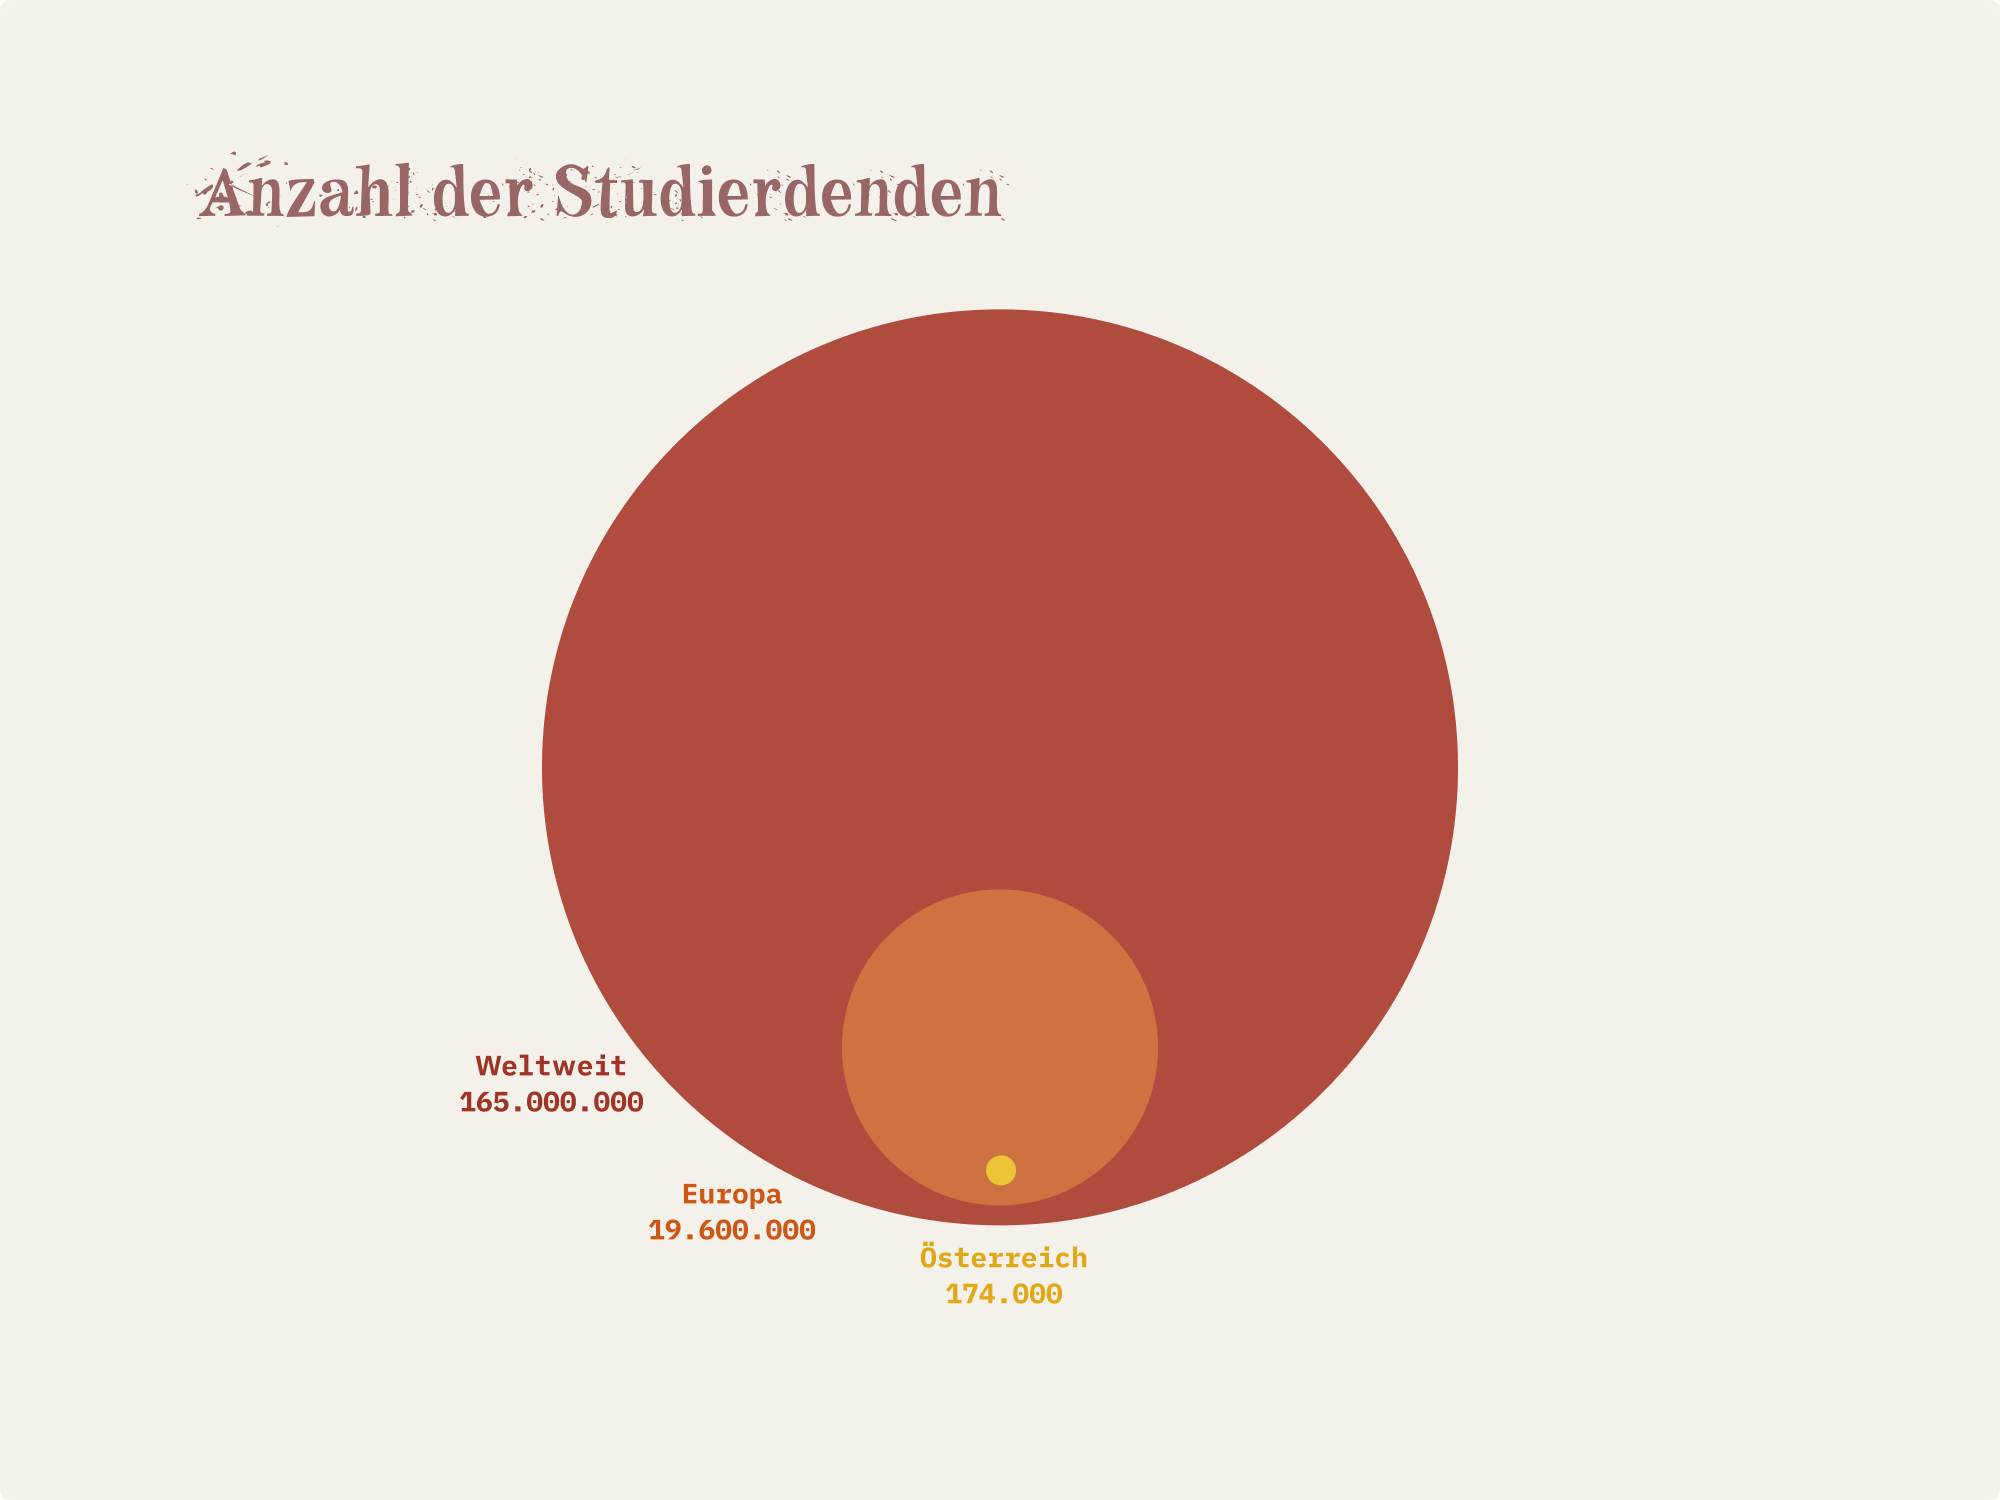 Grafik: Etwa 165 Millionen Studierende weltweit, rund 19,6 Millionen Studierende in Europa und rund 174.000 Studierende in Österreich.